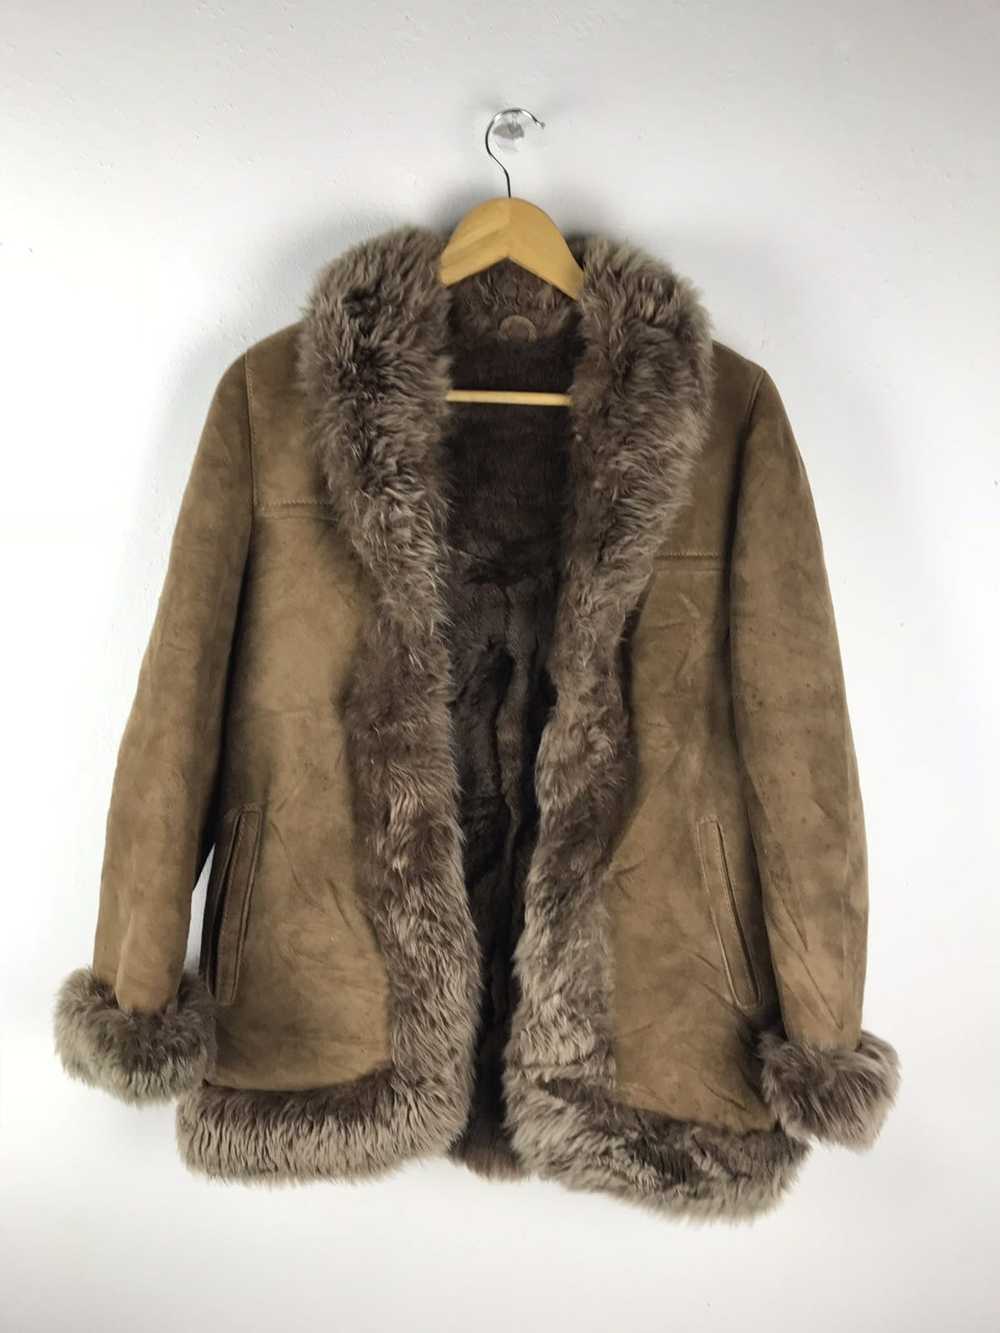 Japanese Brand × Leather Jacket × Mink Fur Coat H… - image 1